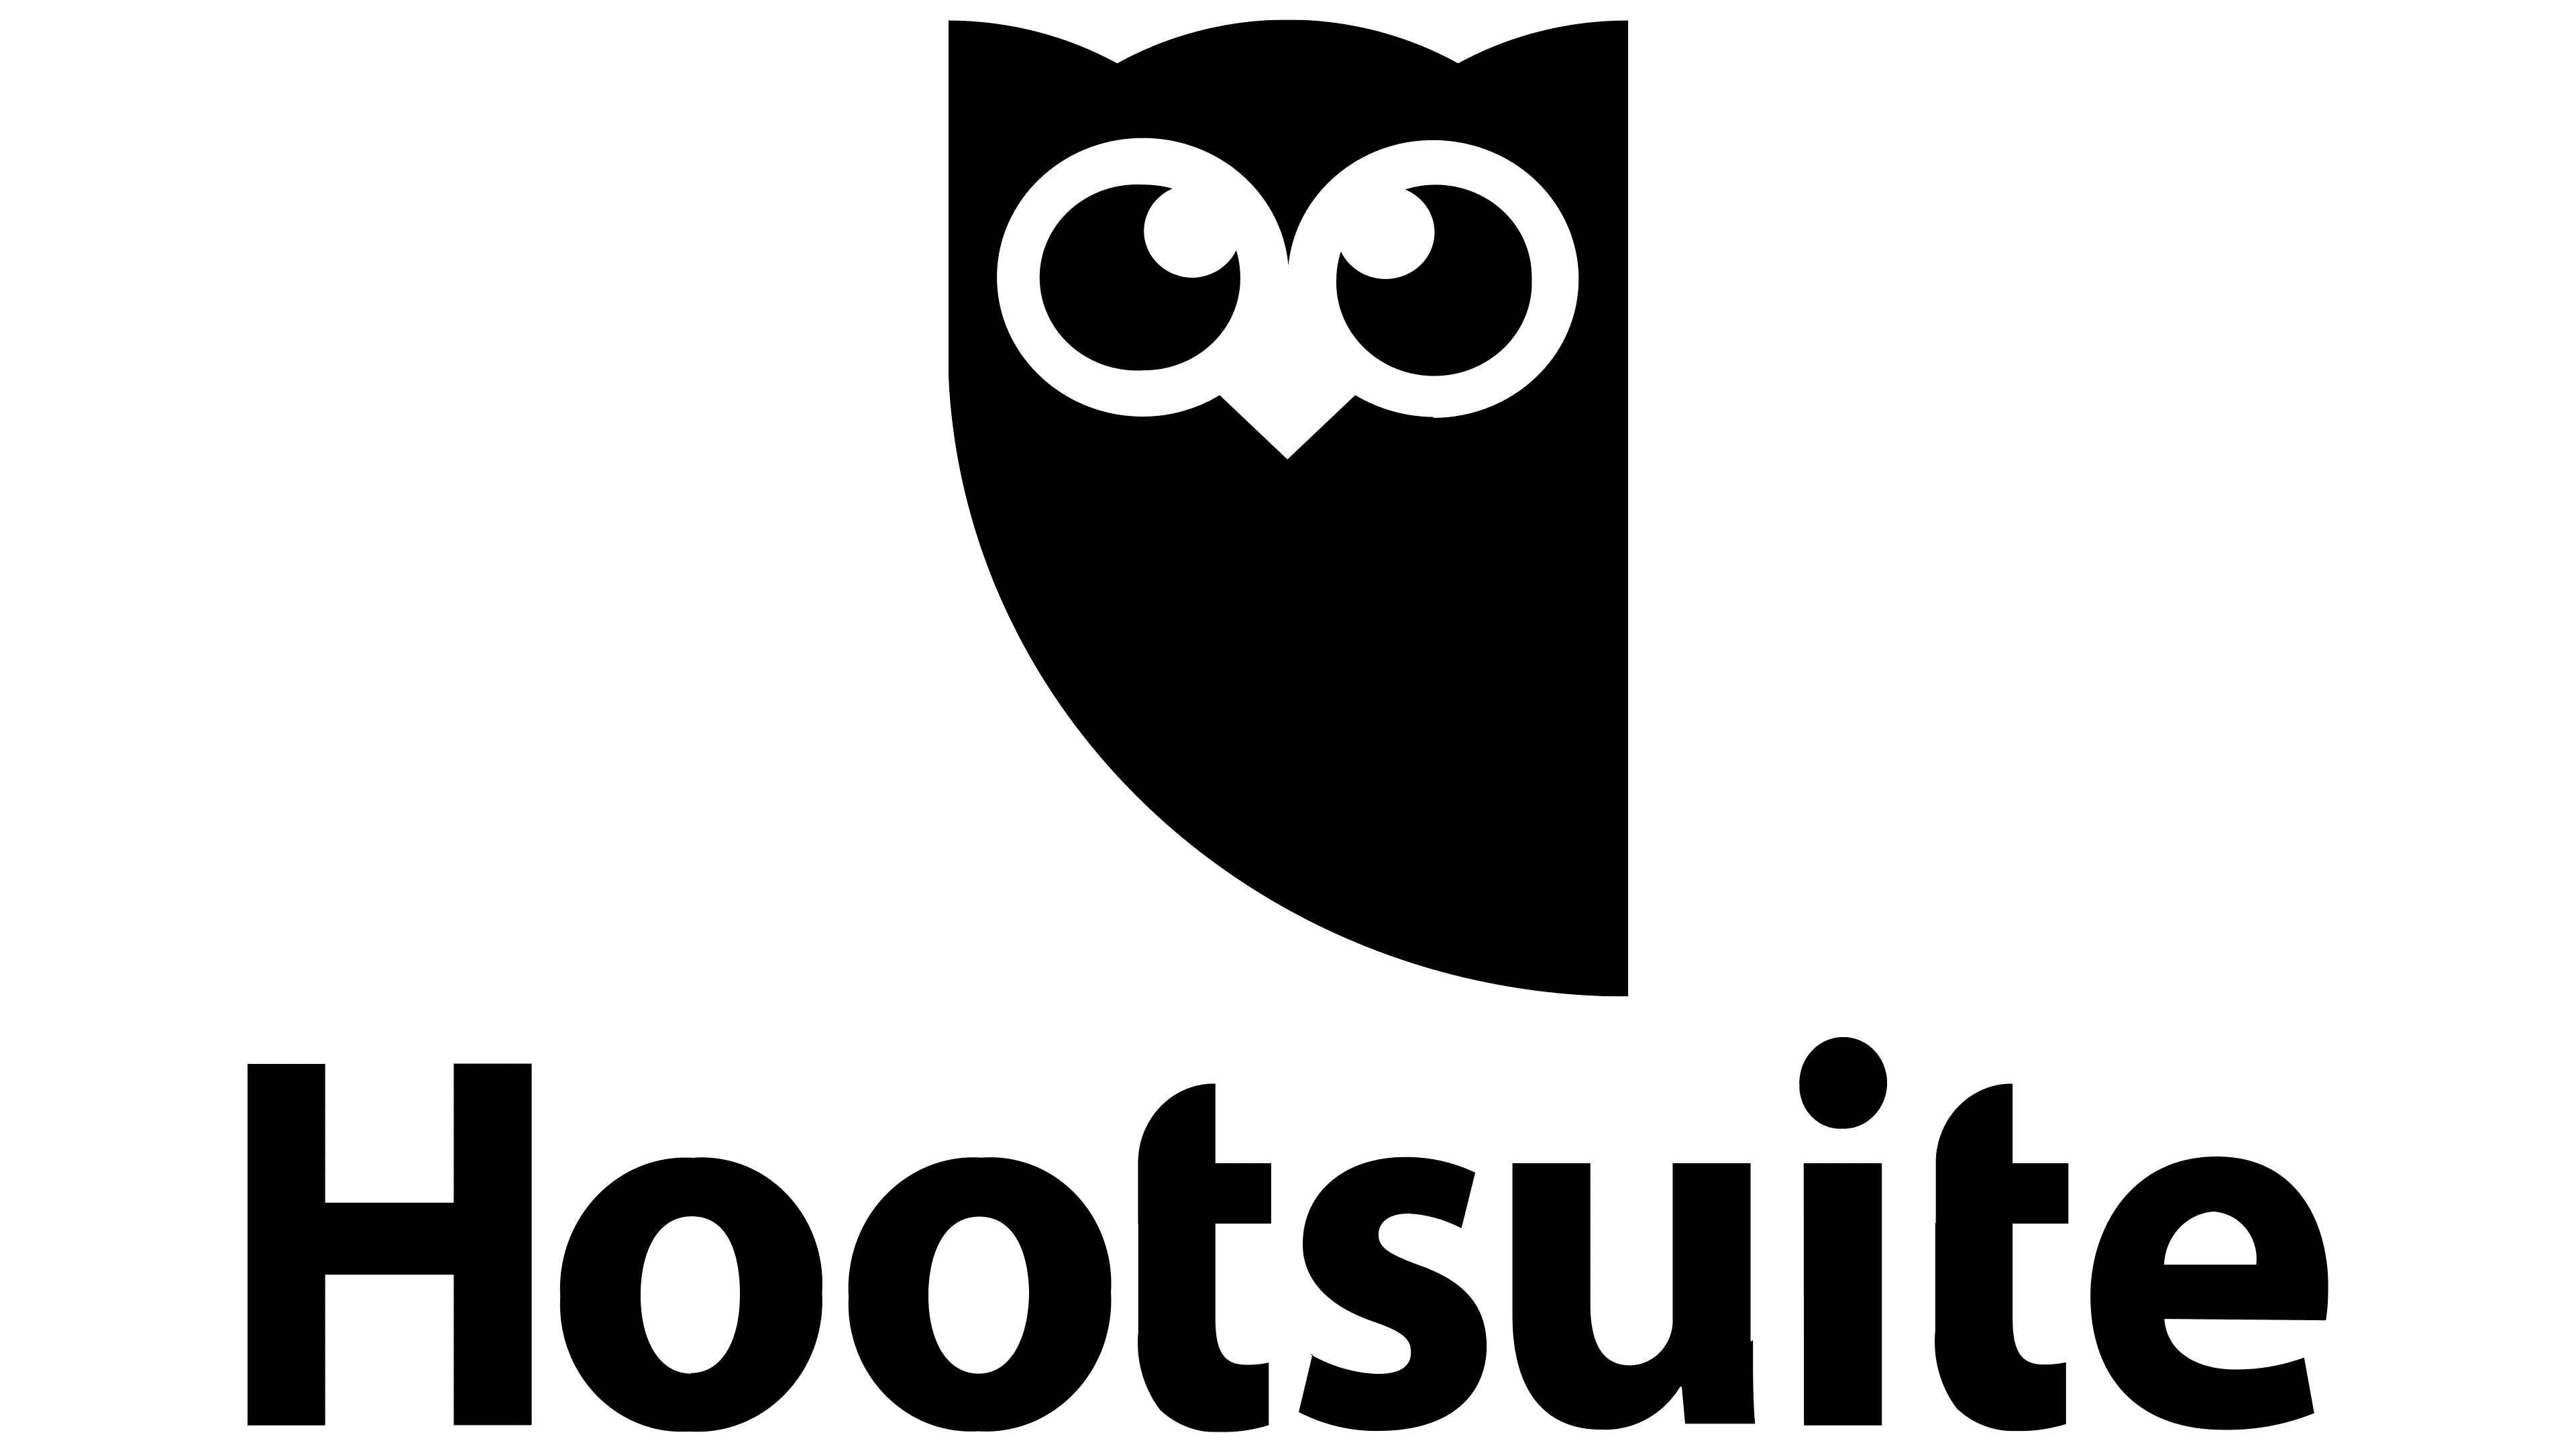 Hootsuite Logo : histoire, signification de l'emblème